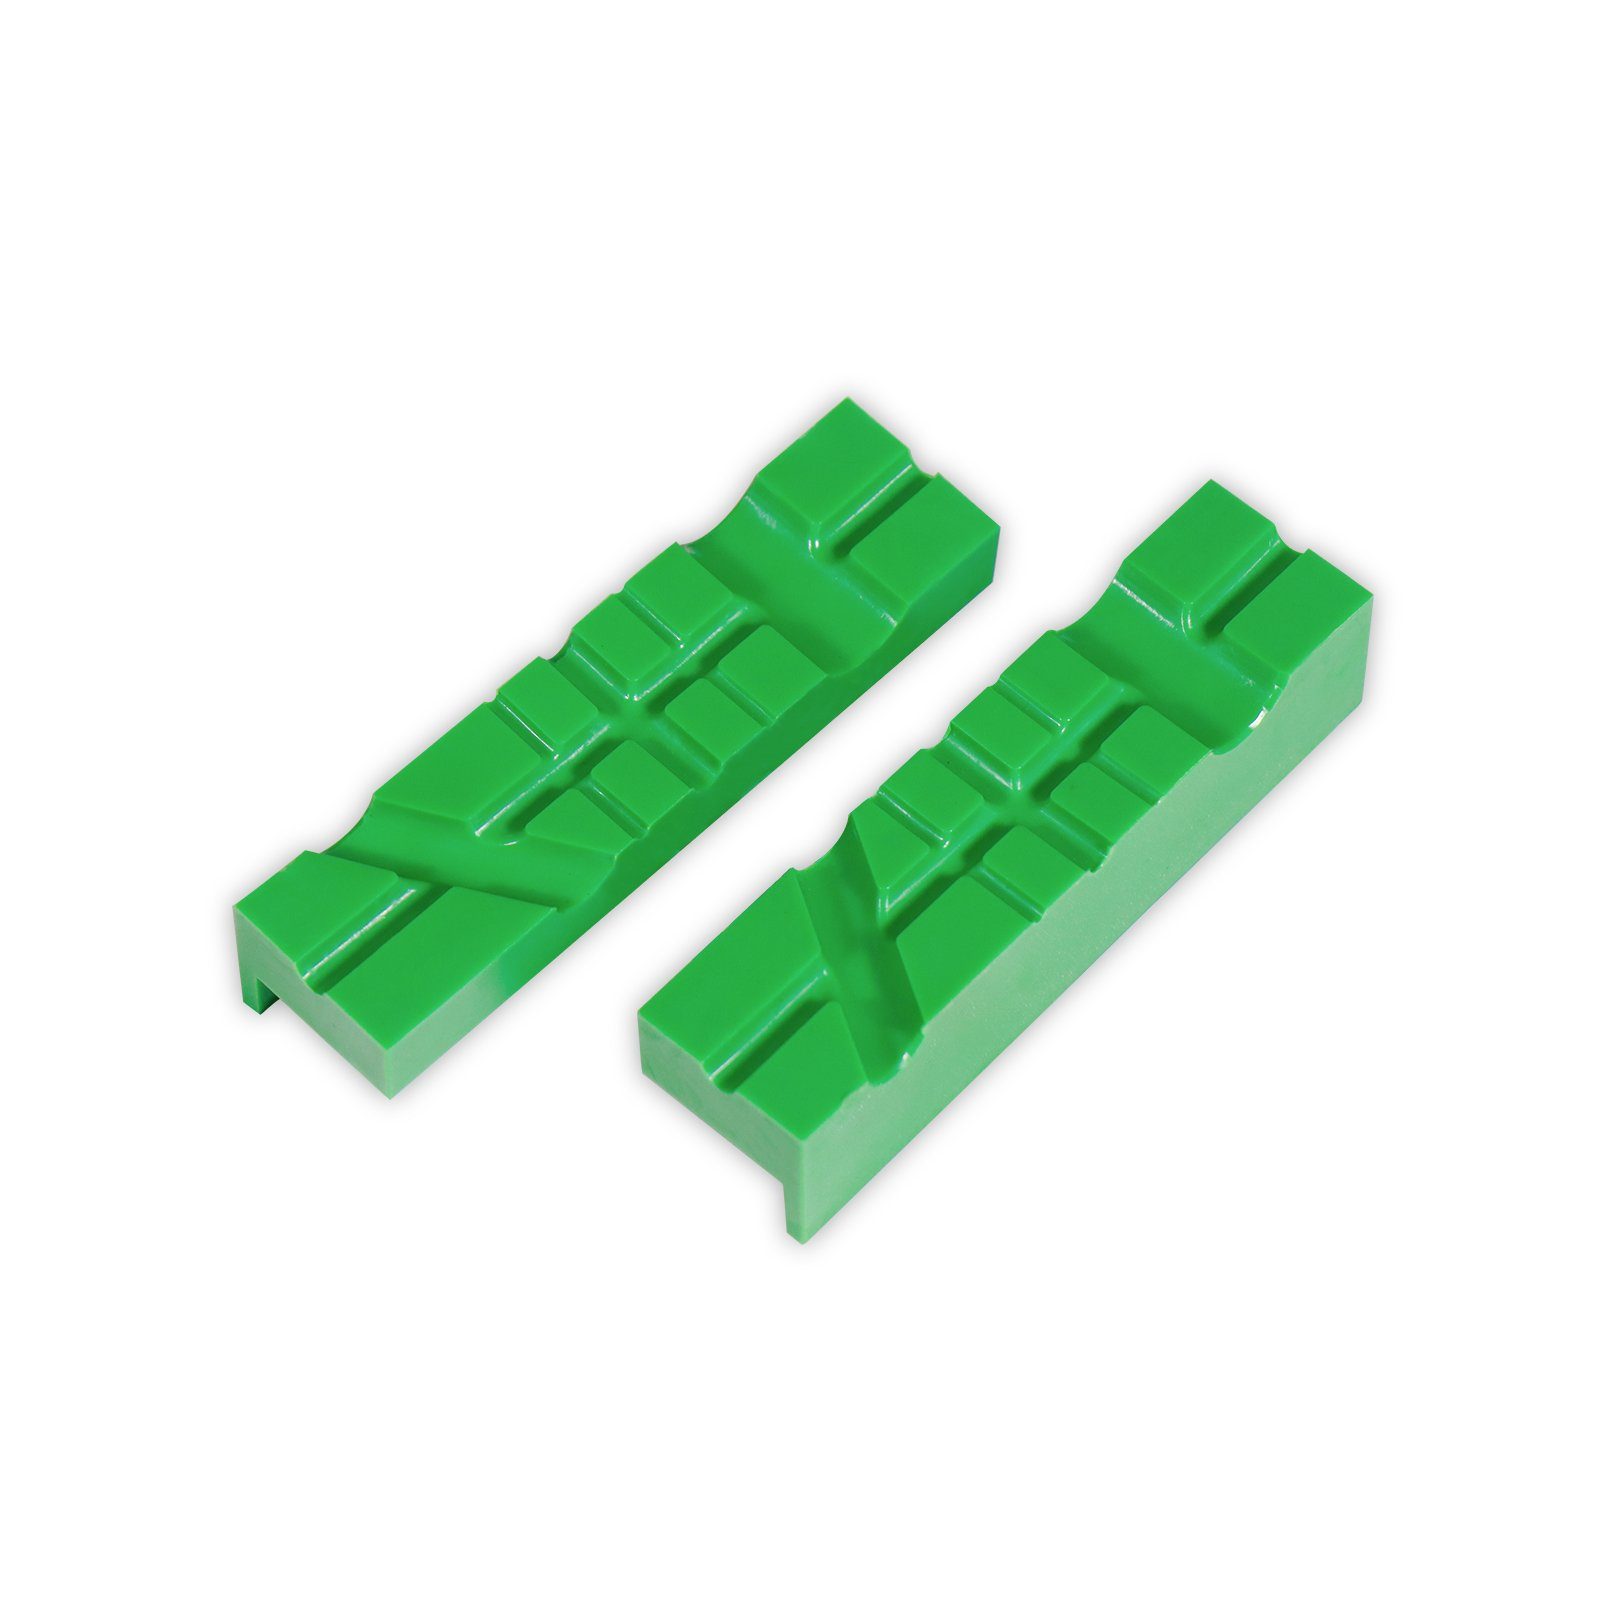 CCLIFE Schraubstock 2 tlg Schraubstock-Schutzbacken Breite 110mm / 150mm mit Magnet grün | Schraubstöcke